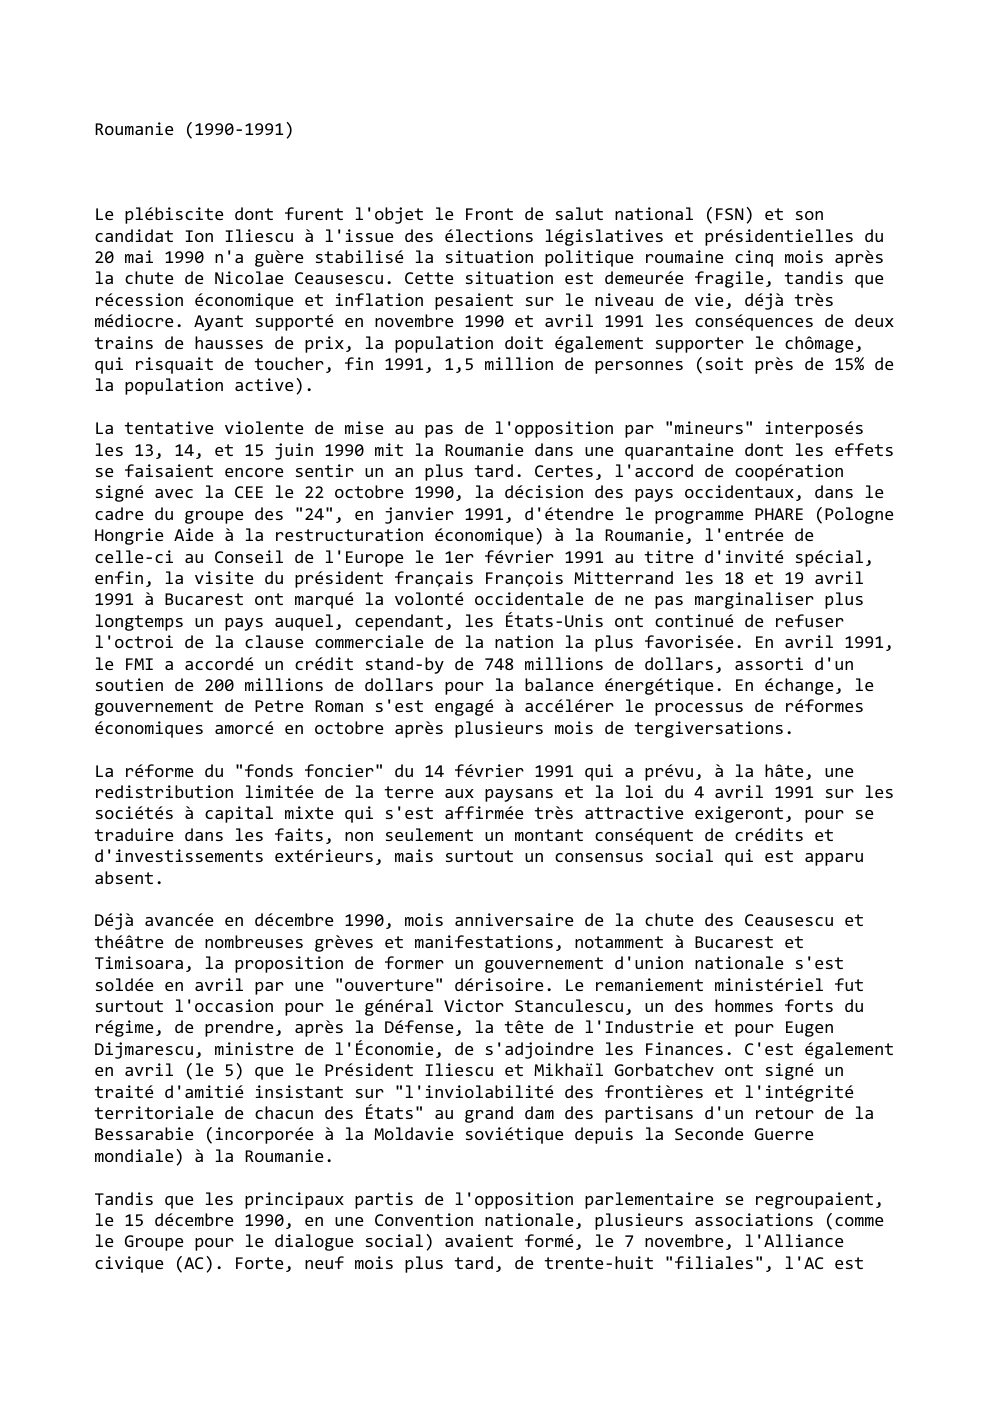 Prévisualisation du document Roumanie (1990-1991)

Le plébiscite dont furent l'objet le Front de salut national (FSN) et son
candidat Ion Iliescu à l'issue...